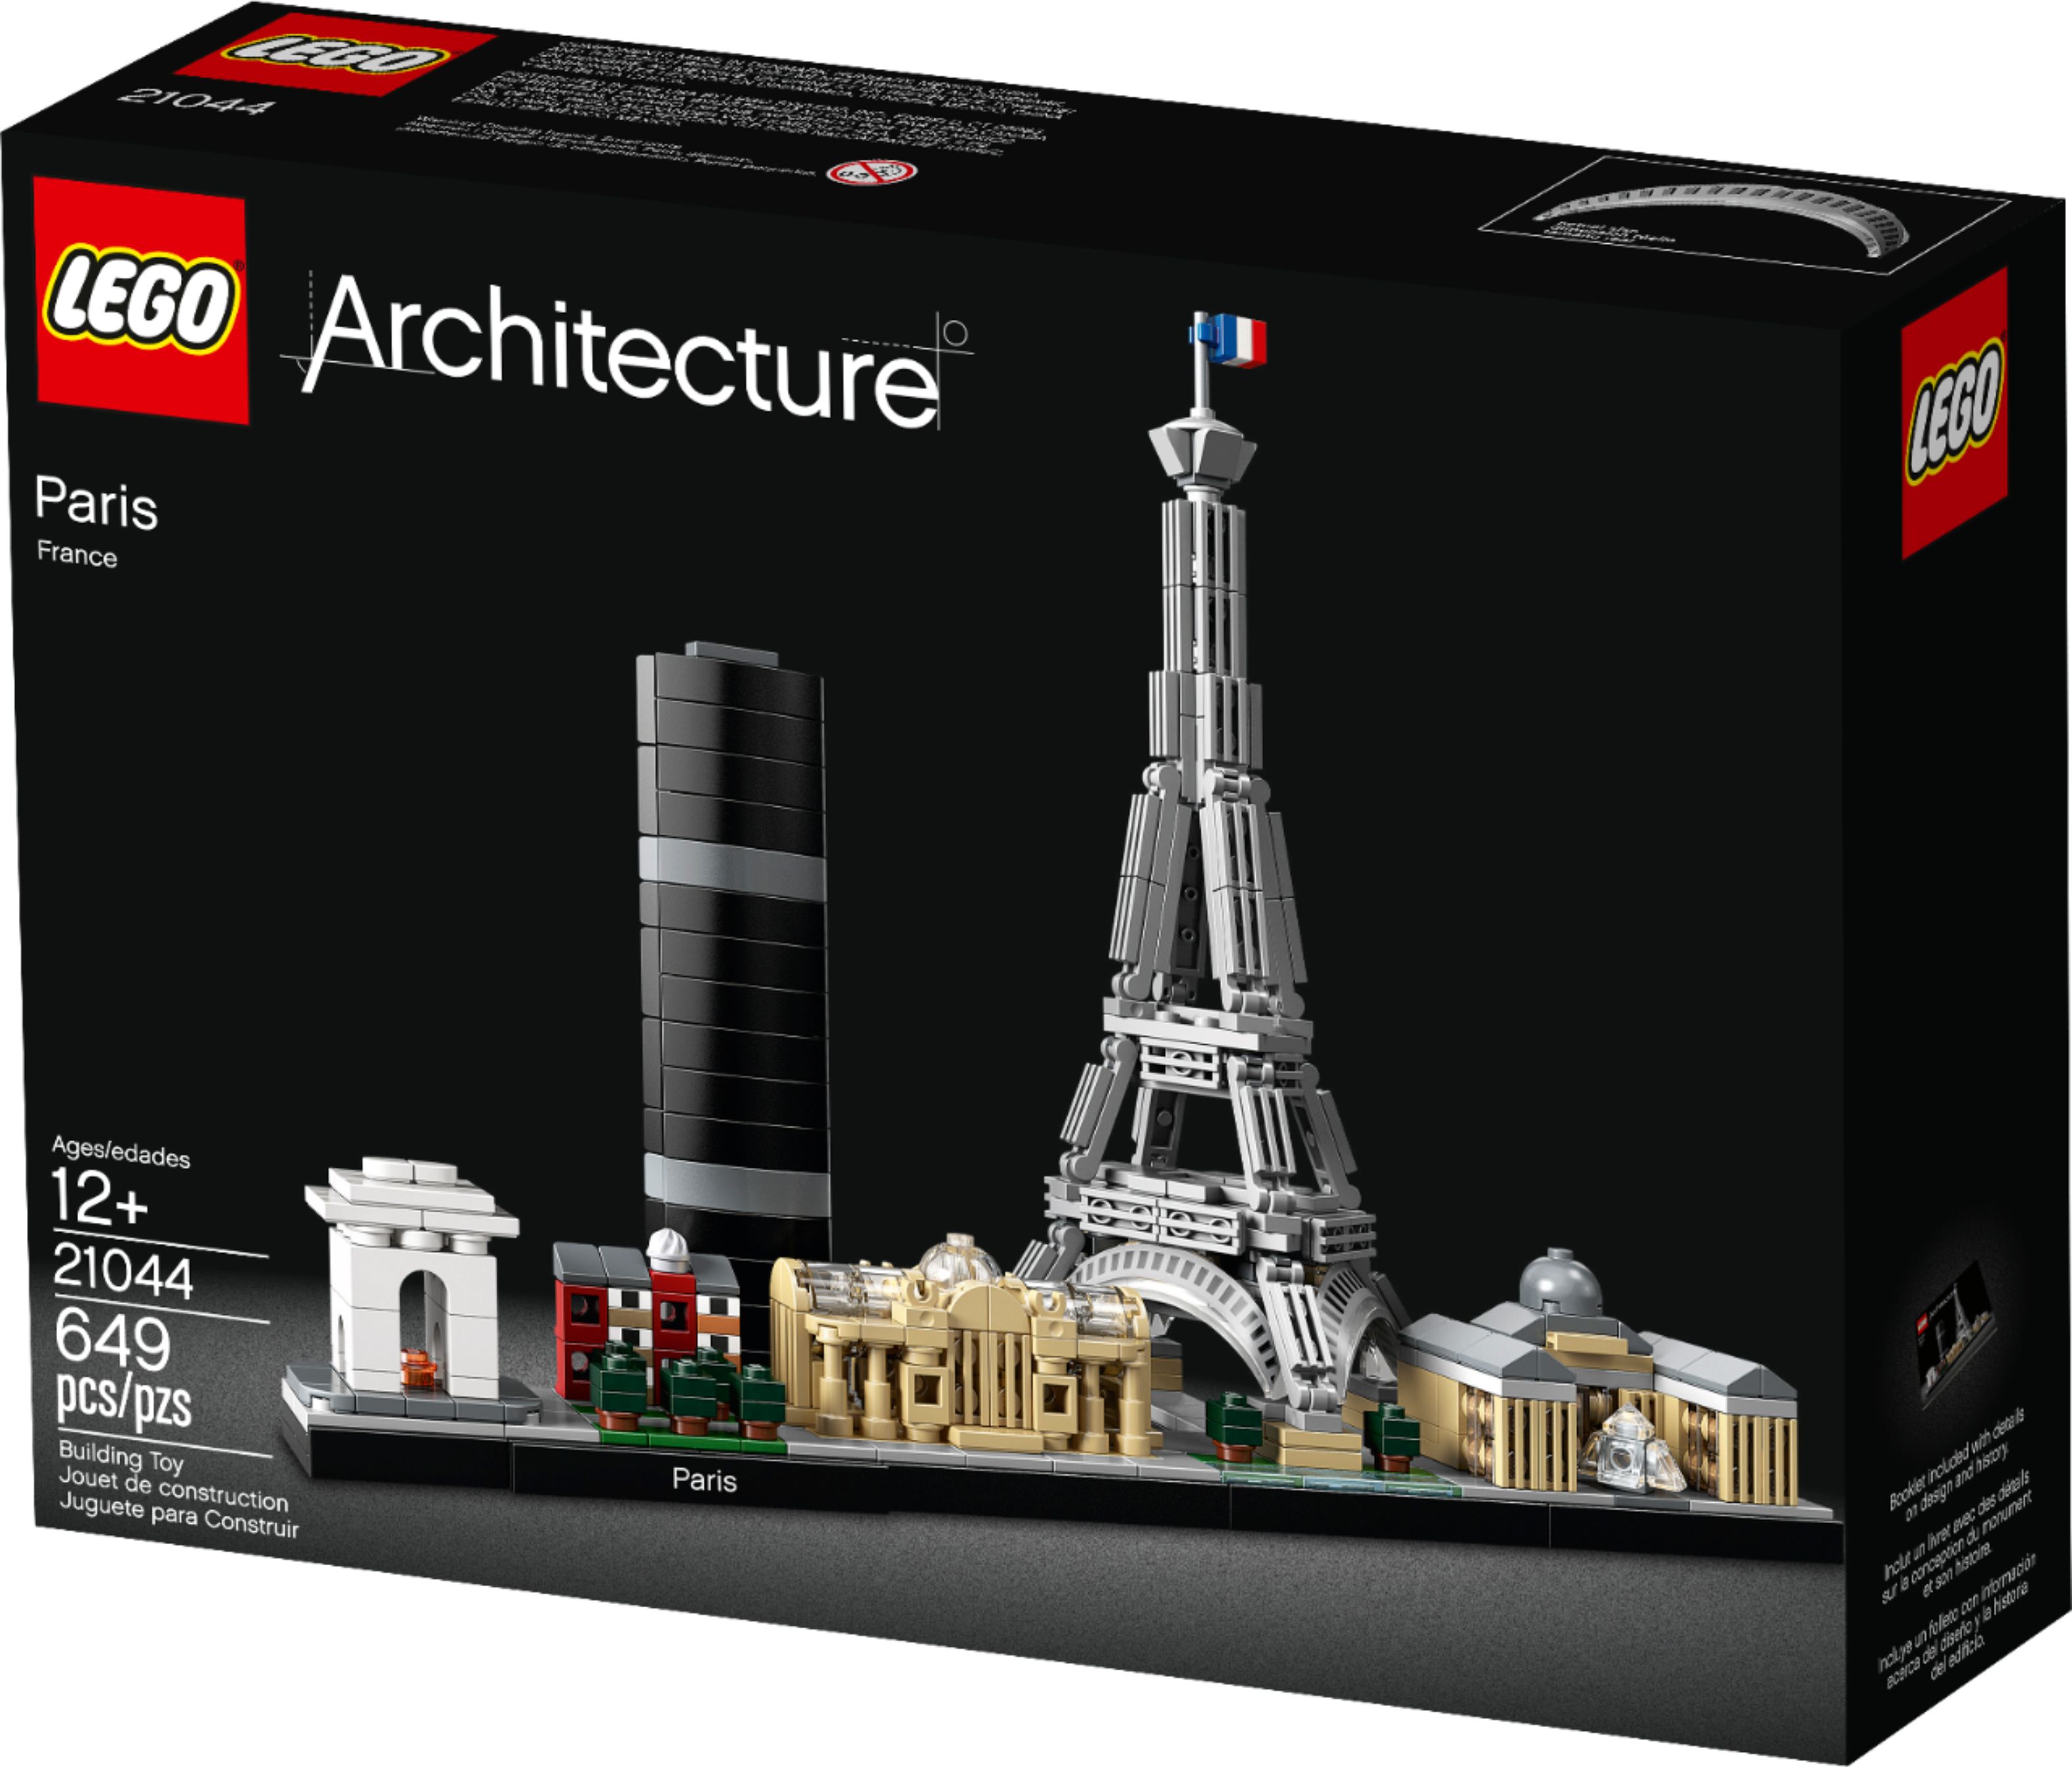 Left View: LEGO - Architecture Paris 21044